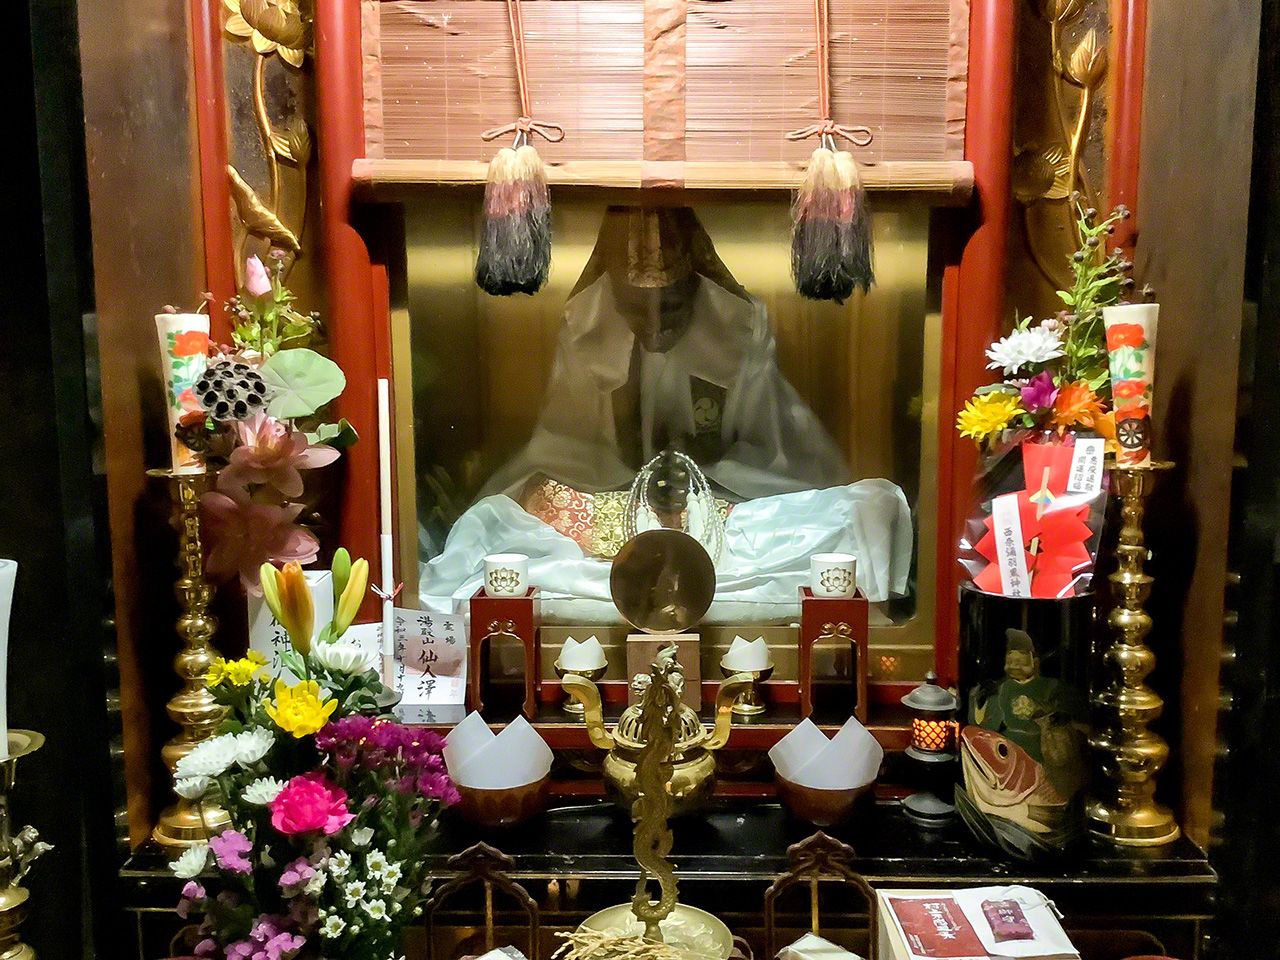 سوكوشينبوتسو بوكَّاي شونين المحفوظة في معبد كانونجي في مدينة موراكامي في محافظة نيغاتا (تصوير: الكاتب)